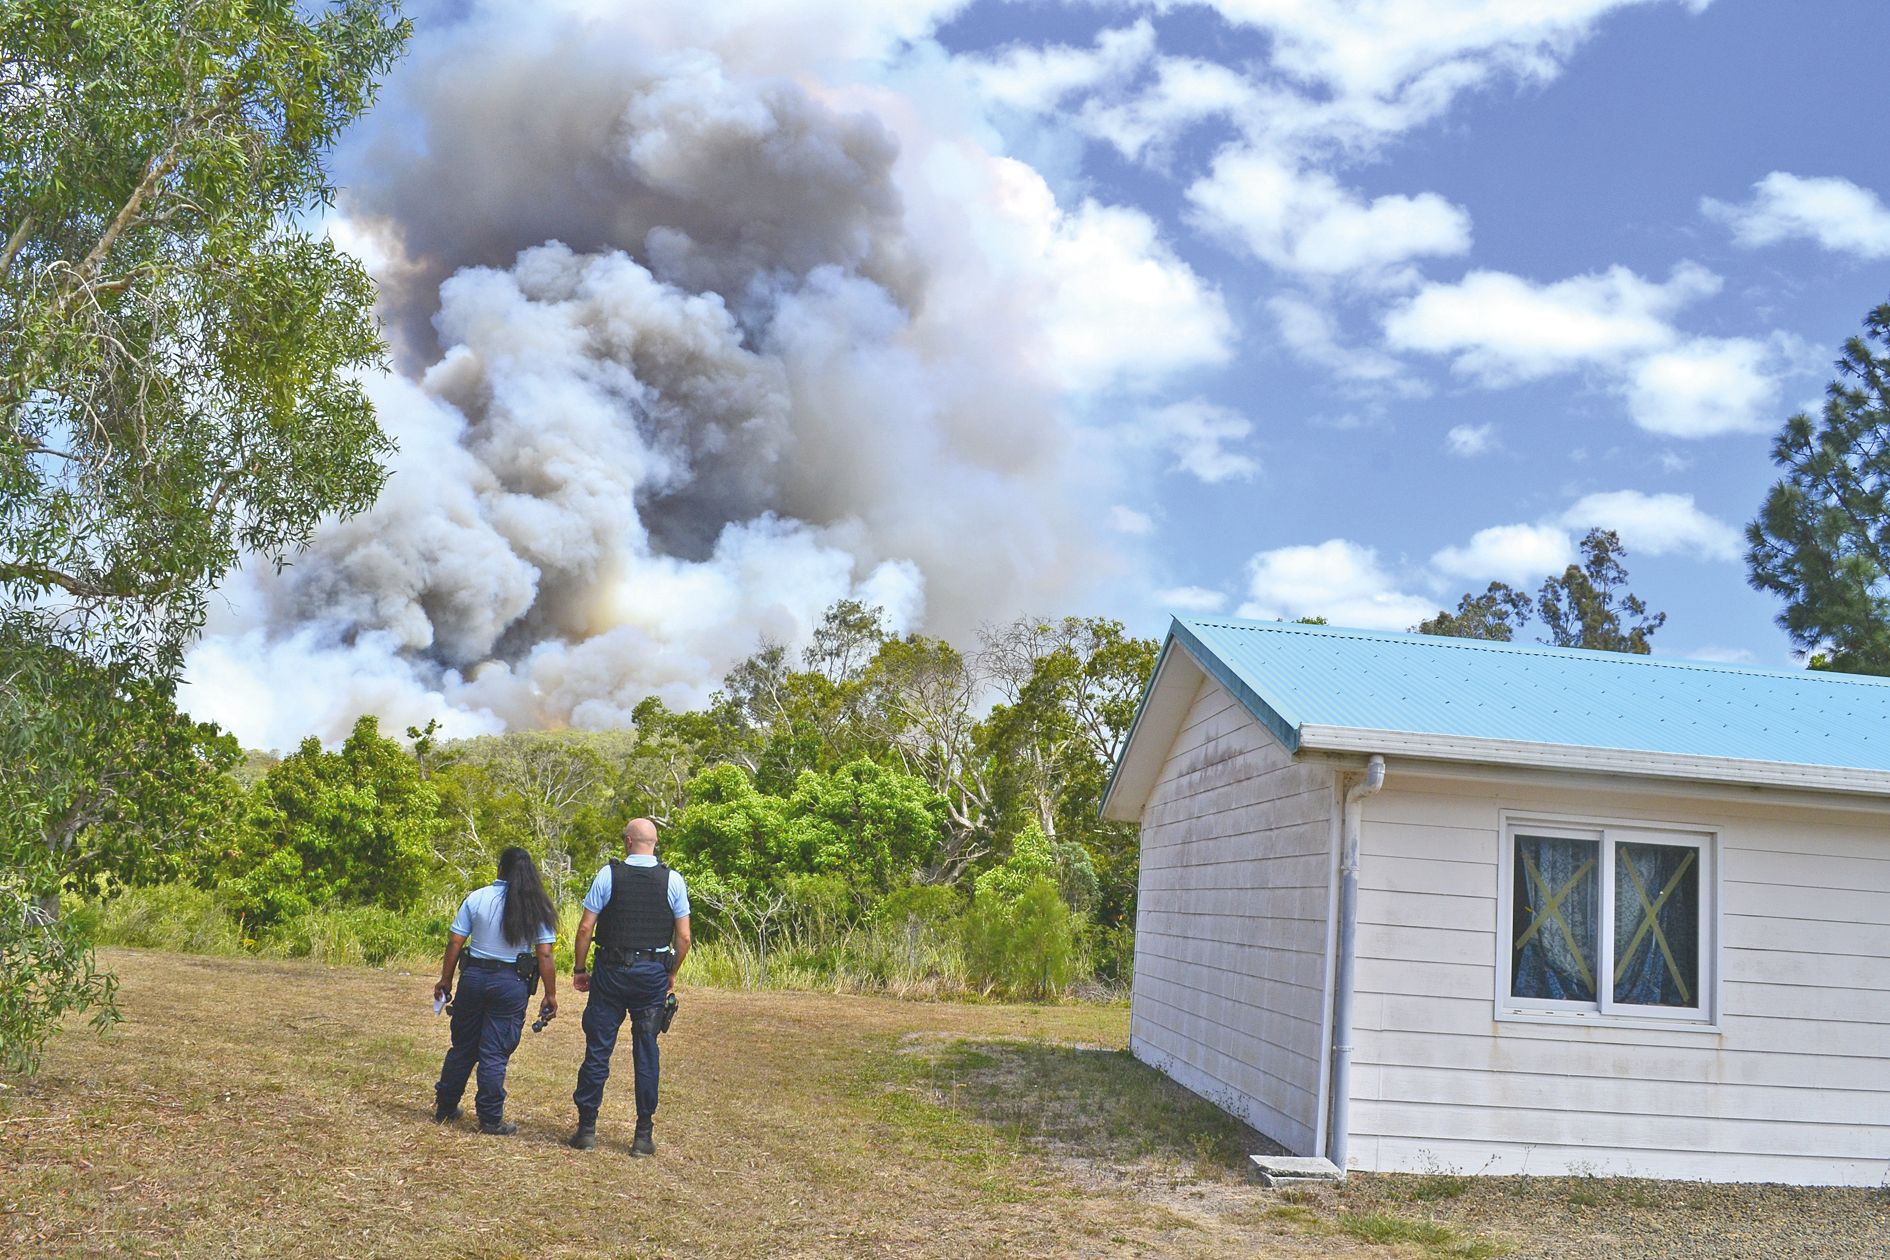 Les gendarmes de Païta étaient mobilisés pour réguler la circulation sur la RT1 et afin d’épauler les pompiers dans les missions de reconnaissance à Bangou.